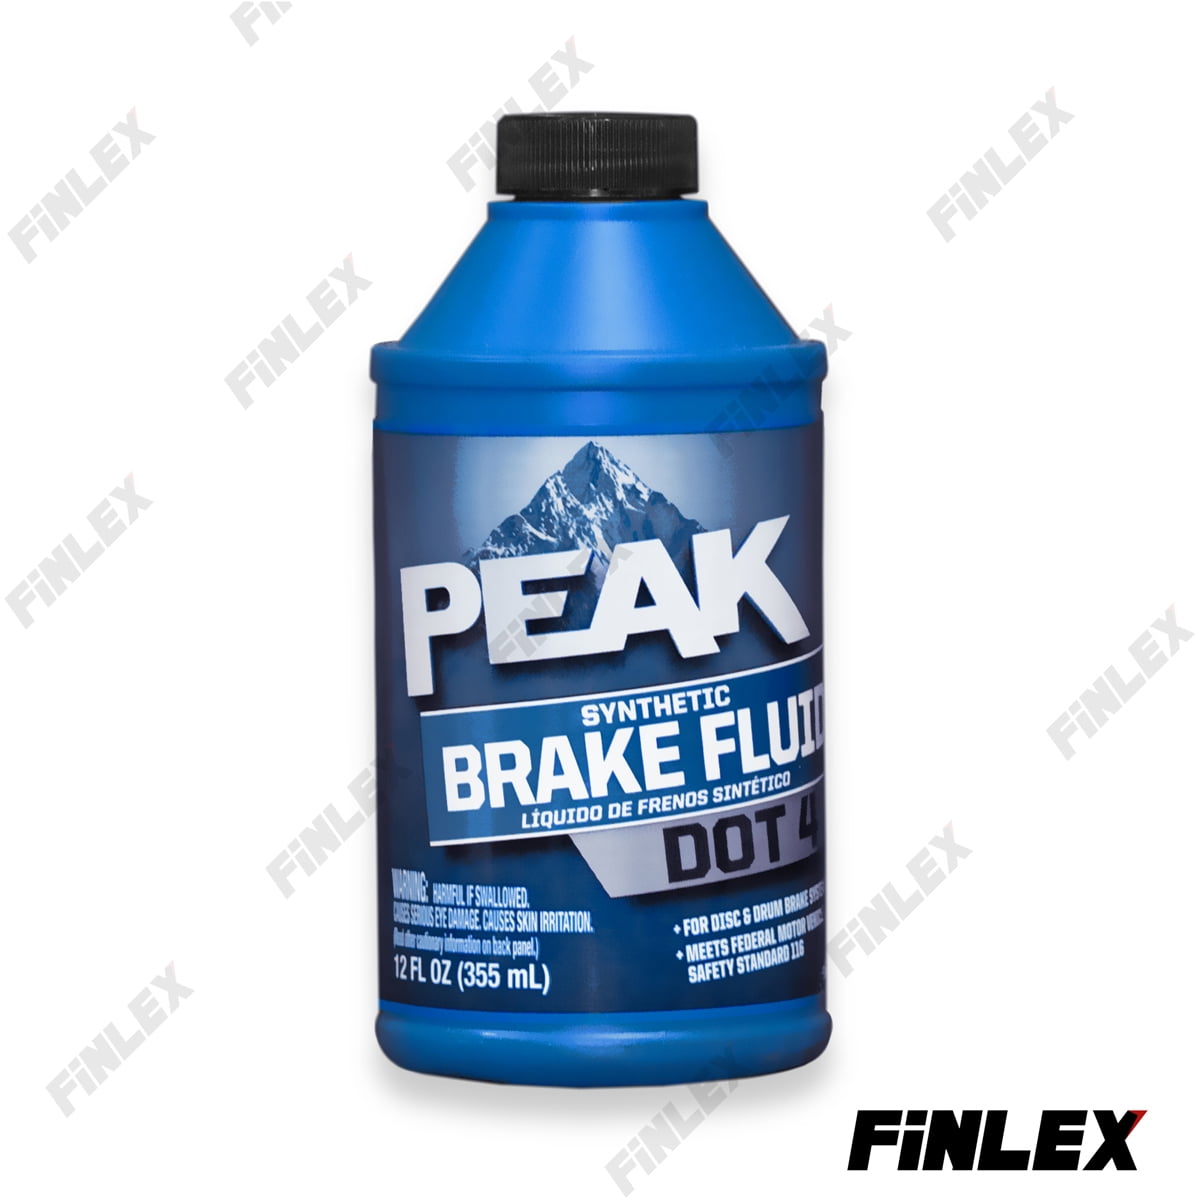 Dáº§u tháº¯ng dot 4 synthetic peak brake fluid